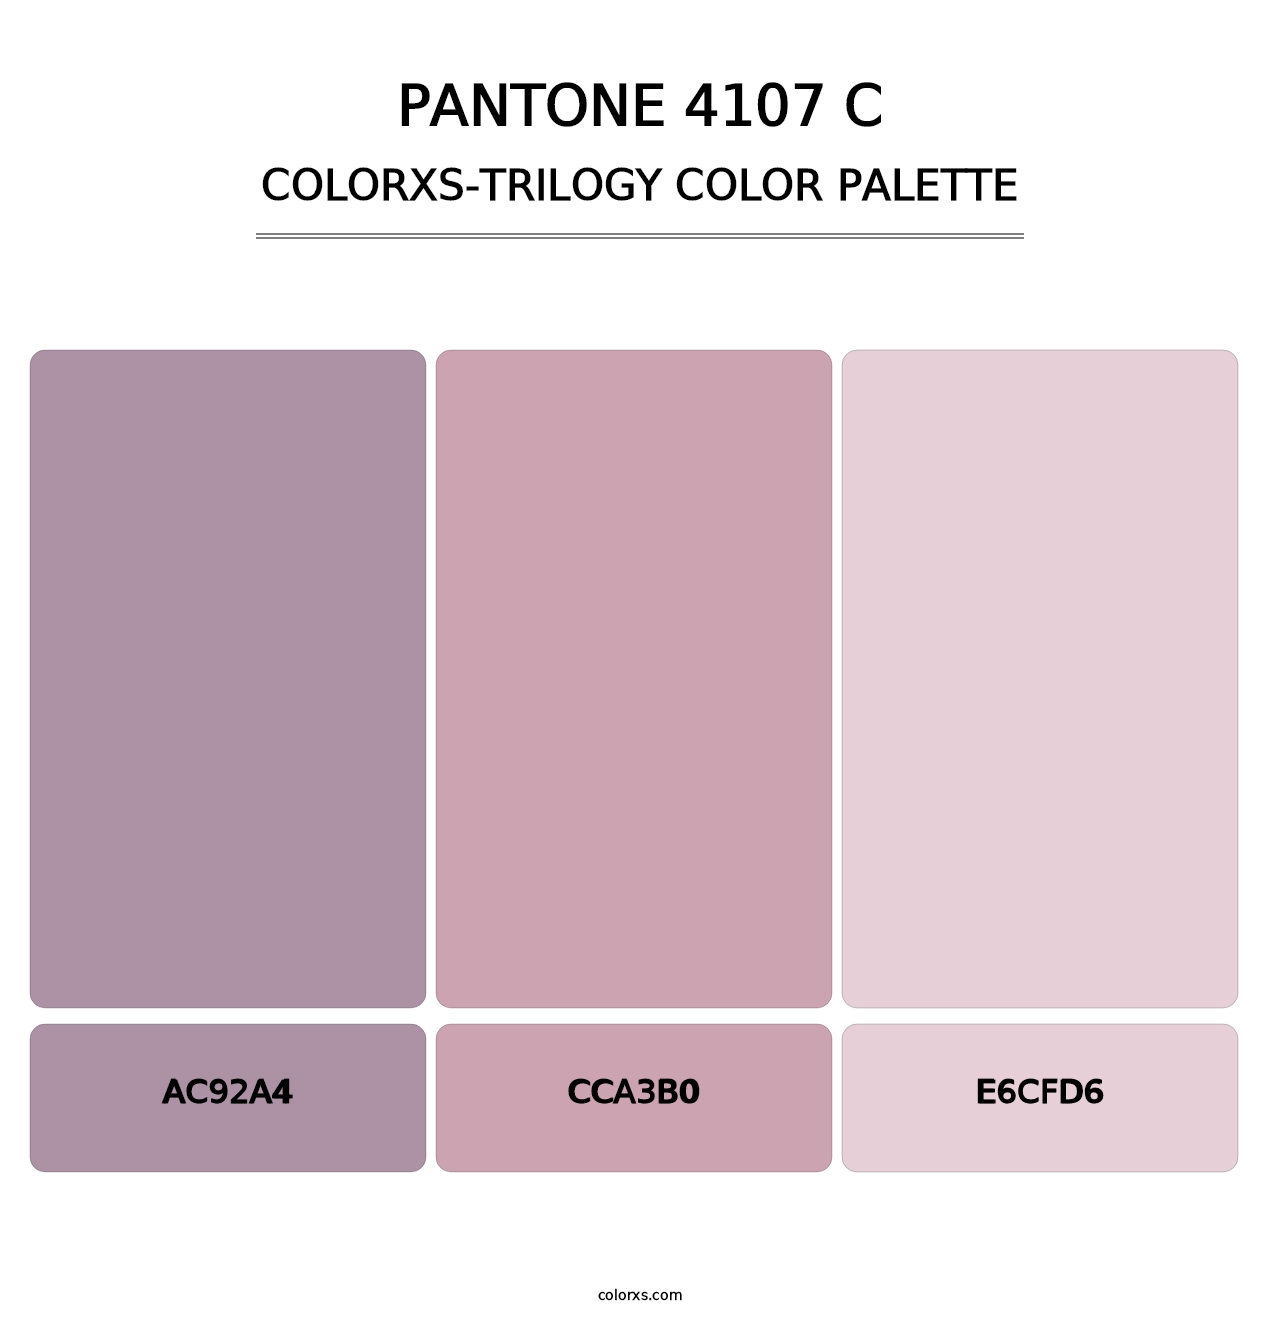 PANTONE 4107 C - Colorxs Trilogy Palette